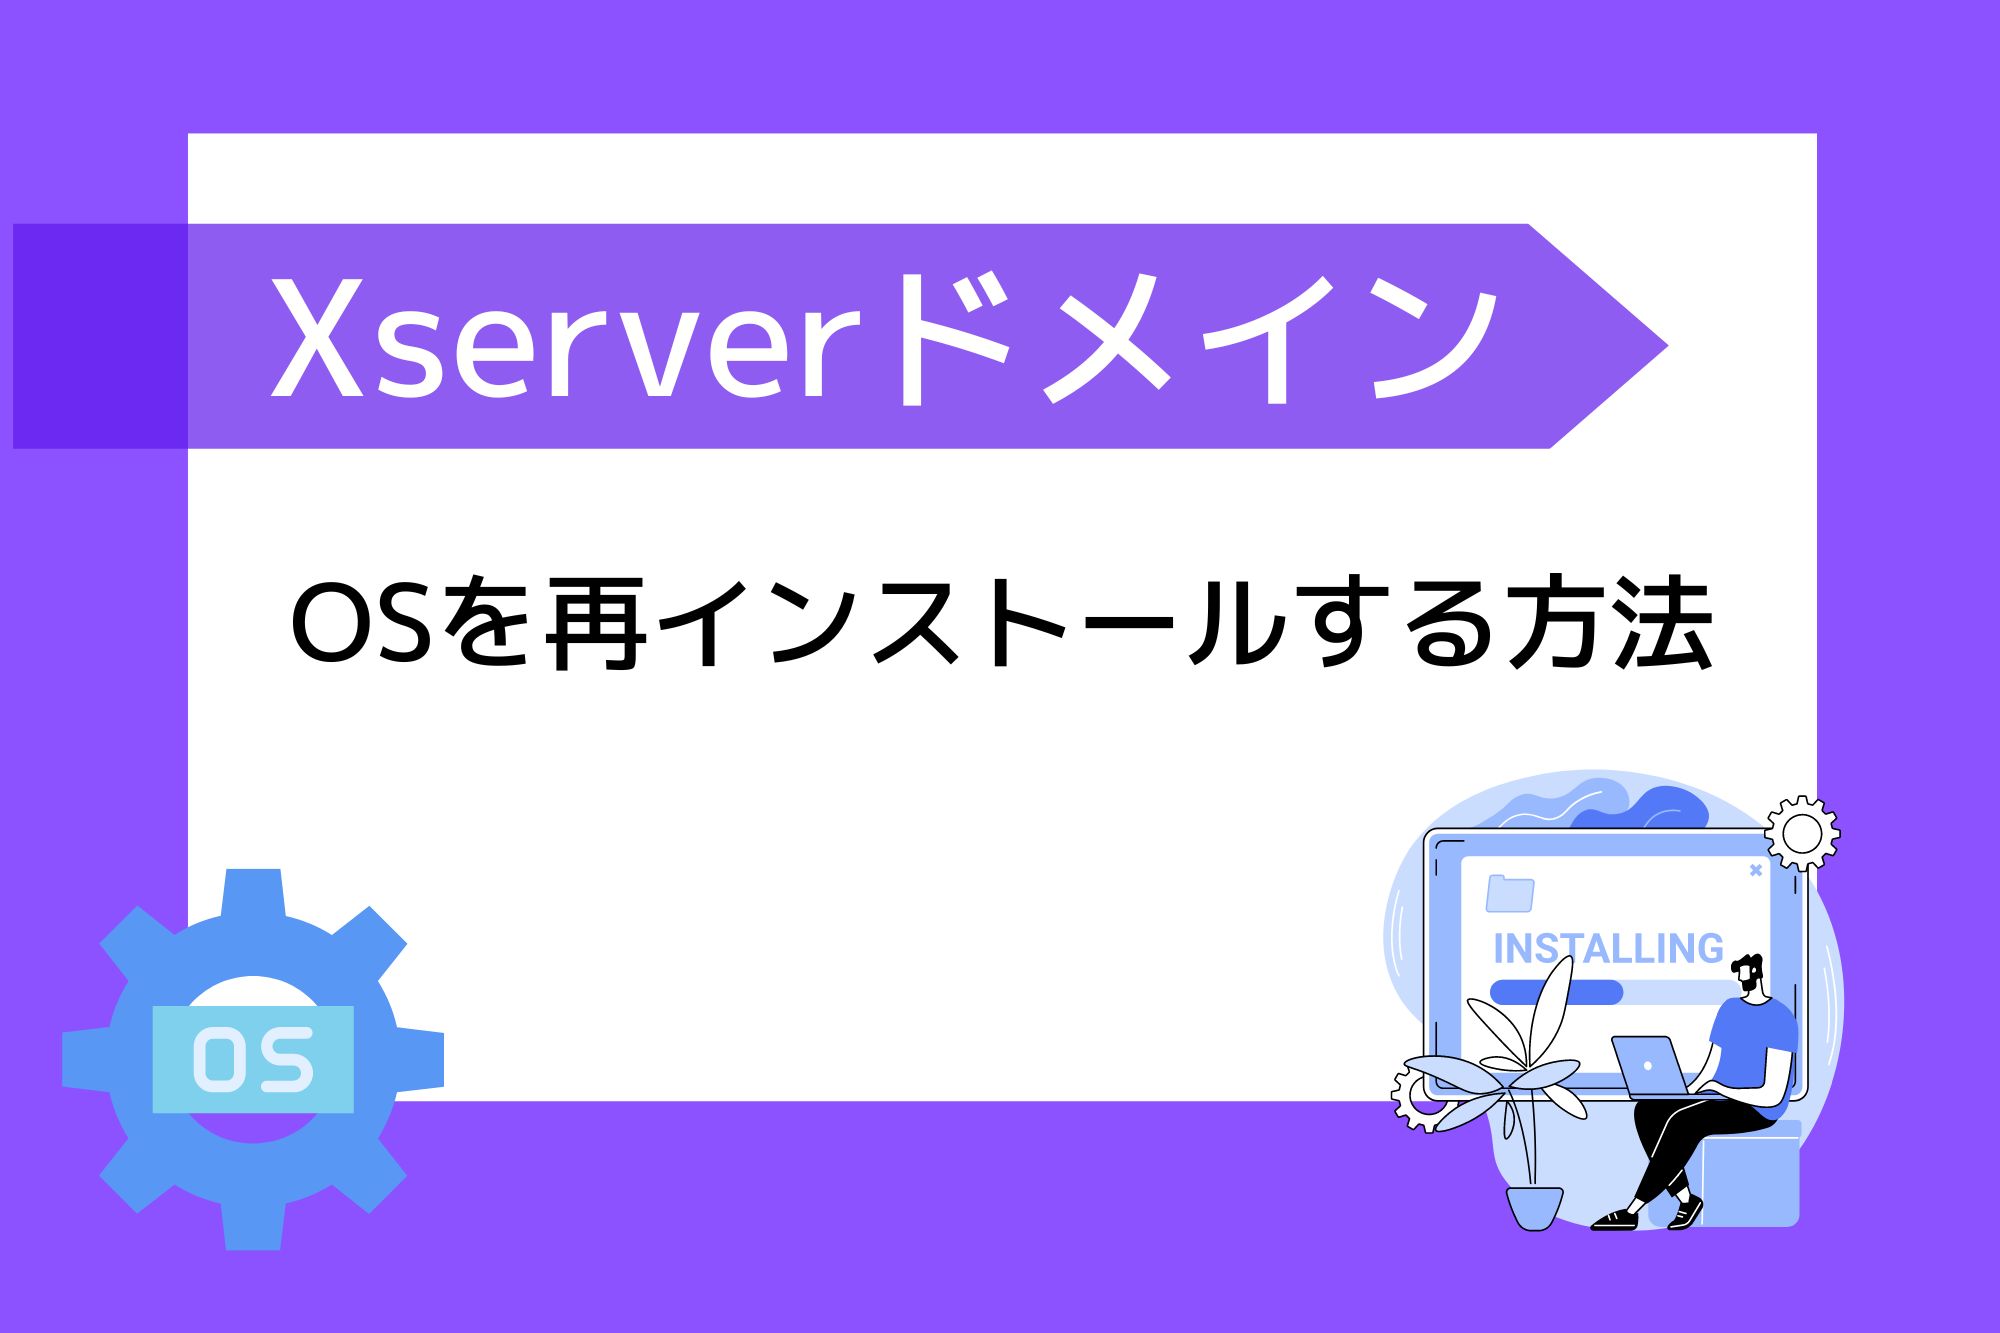 Xserver VPSでOSを再インストールする方法